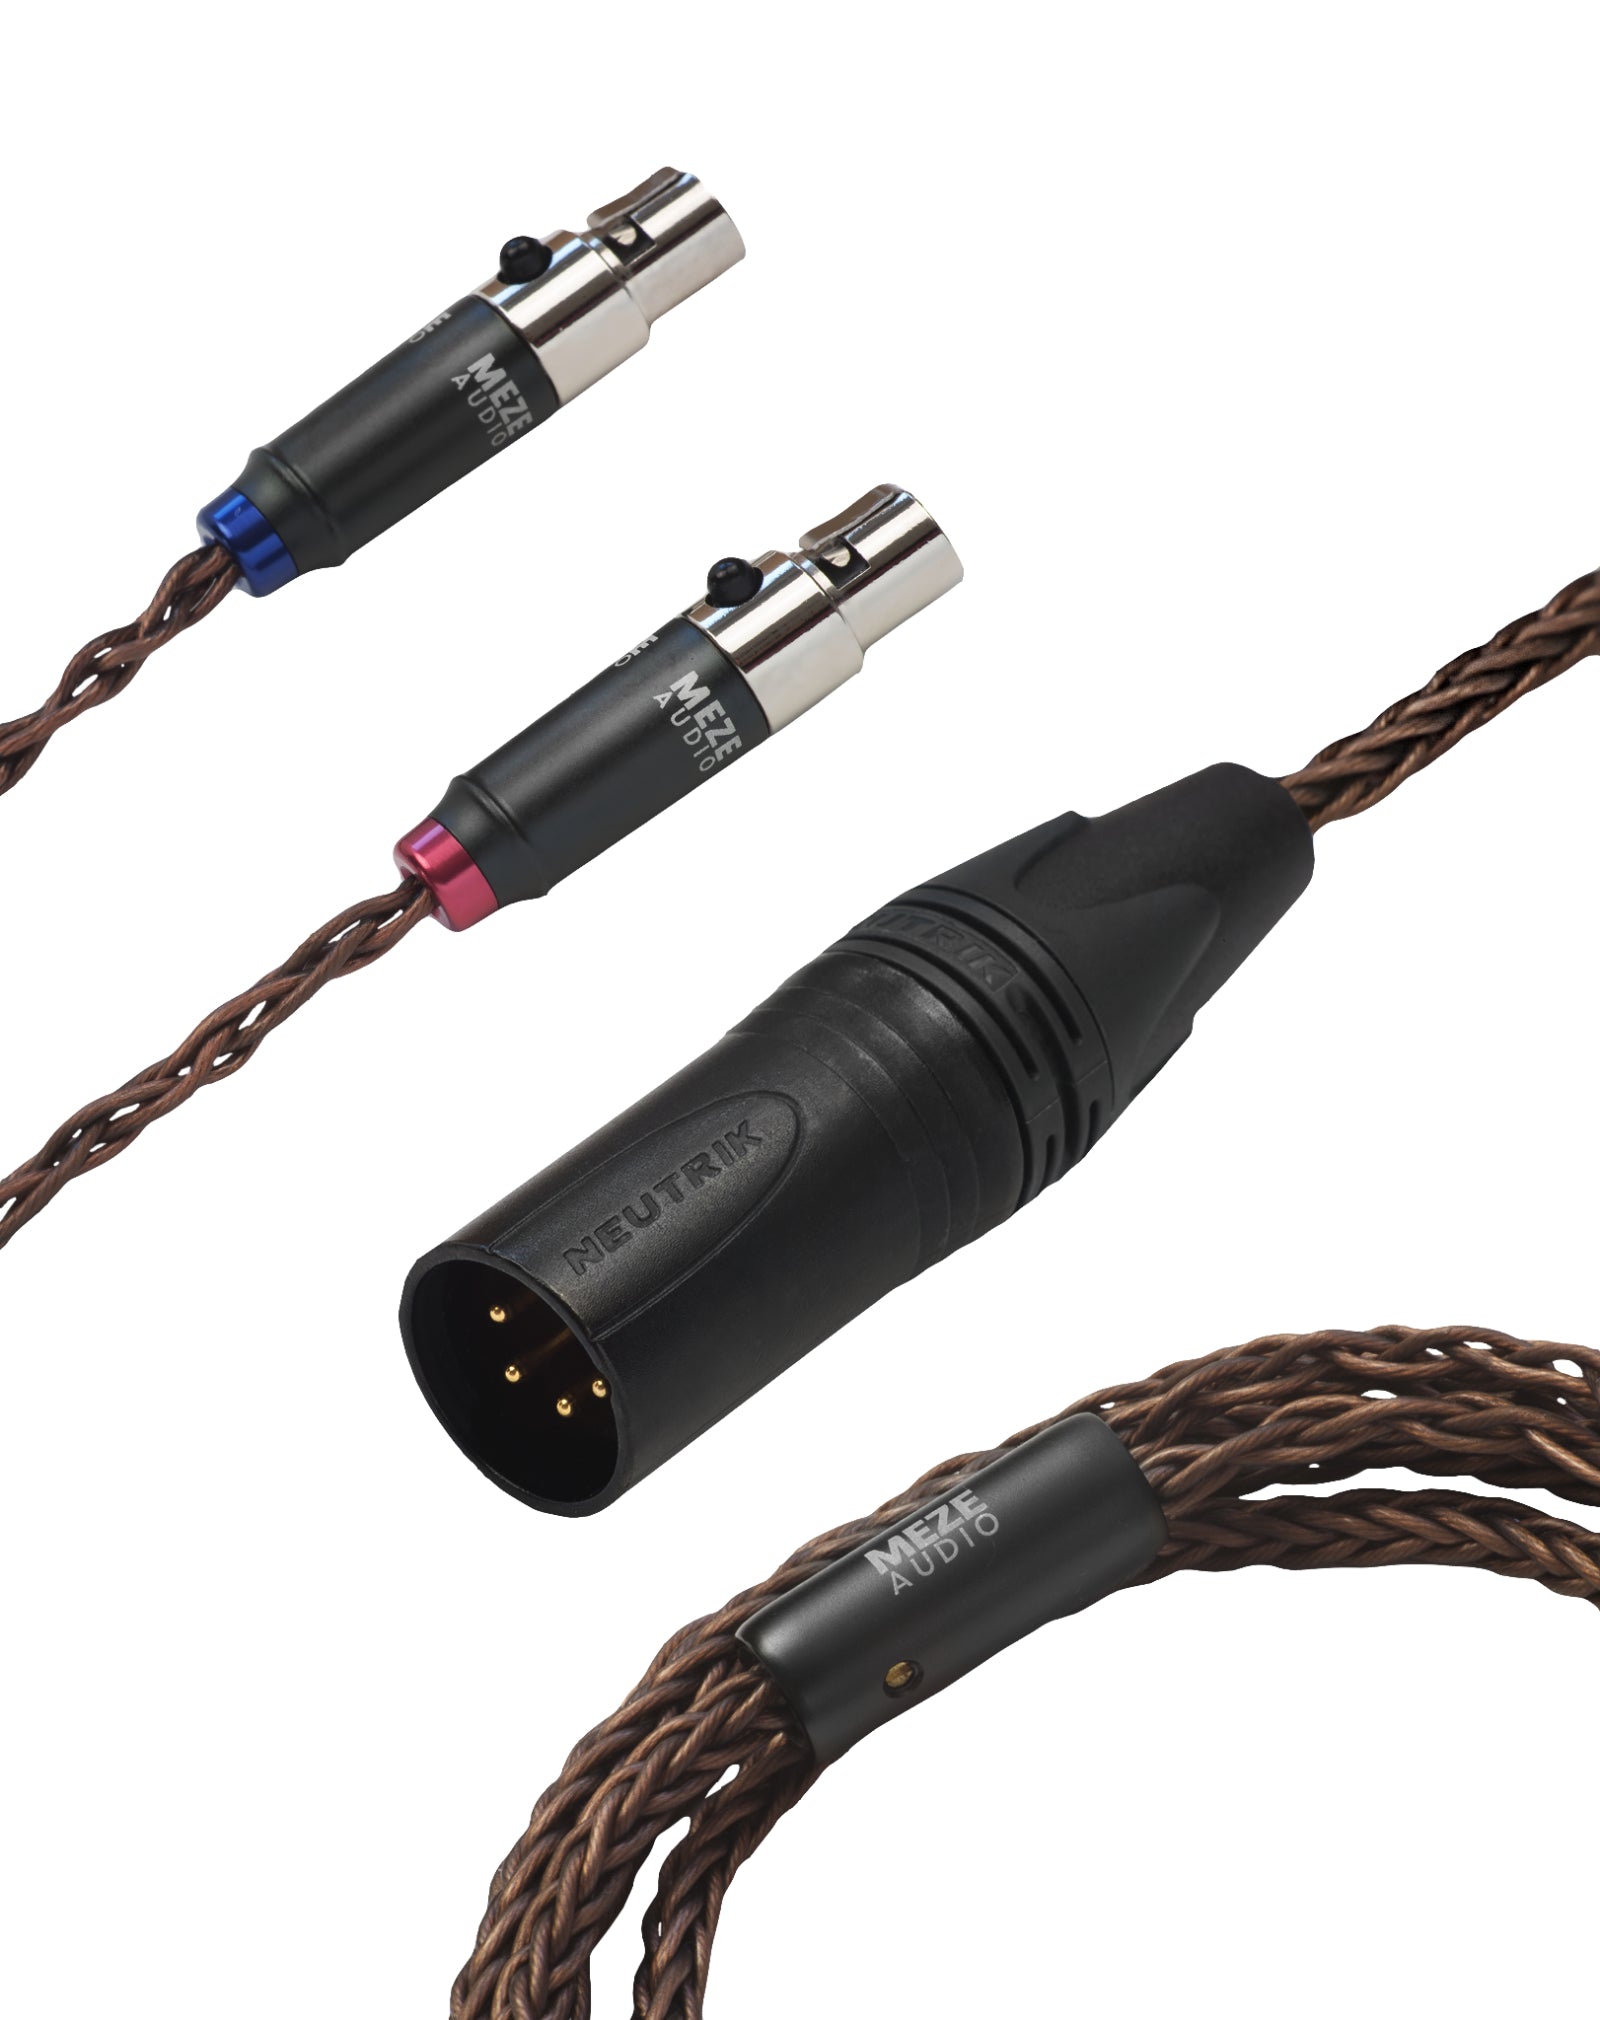 Meze Audio MEM-XLR upgrade cable